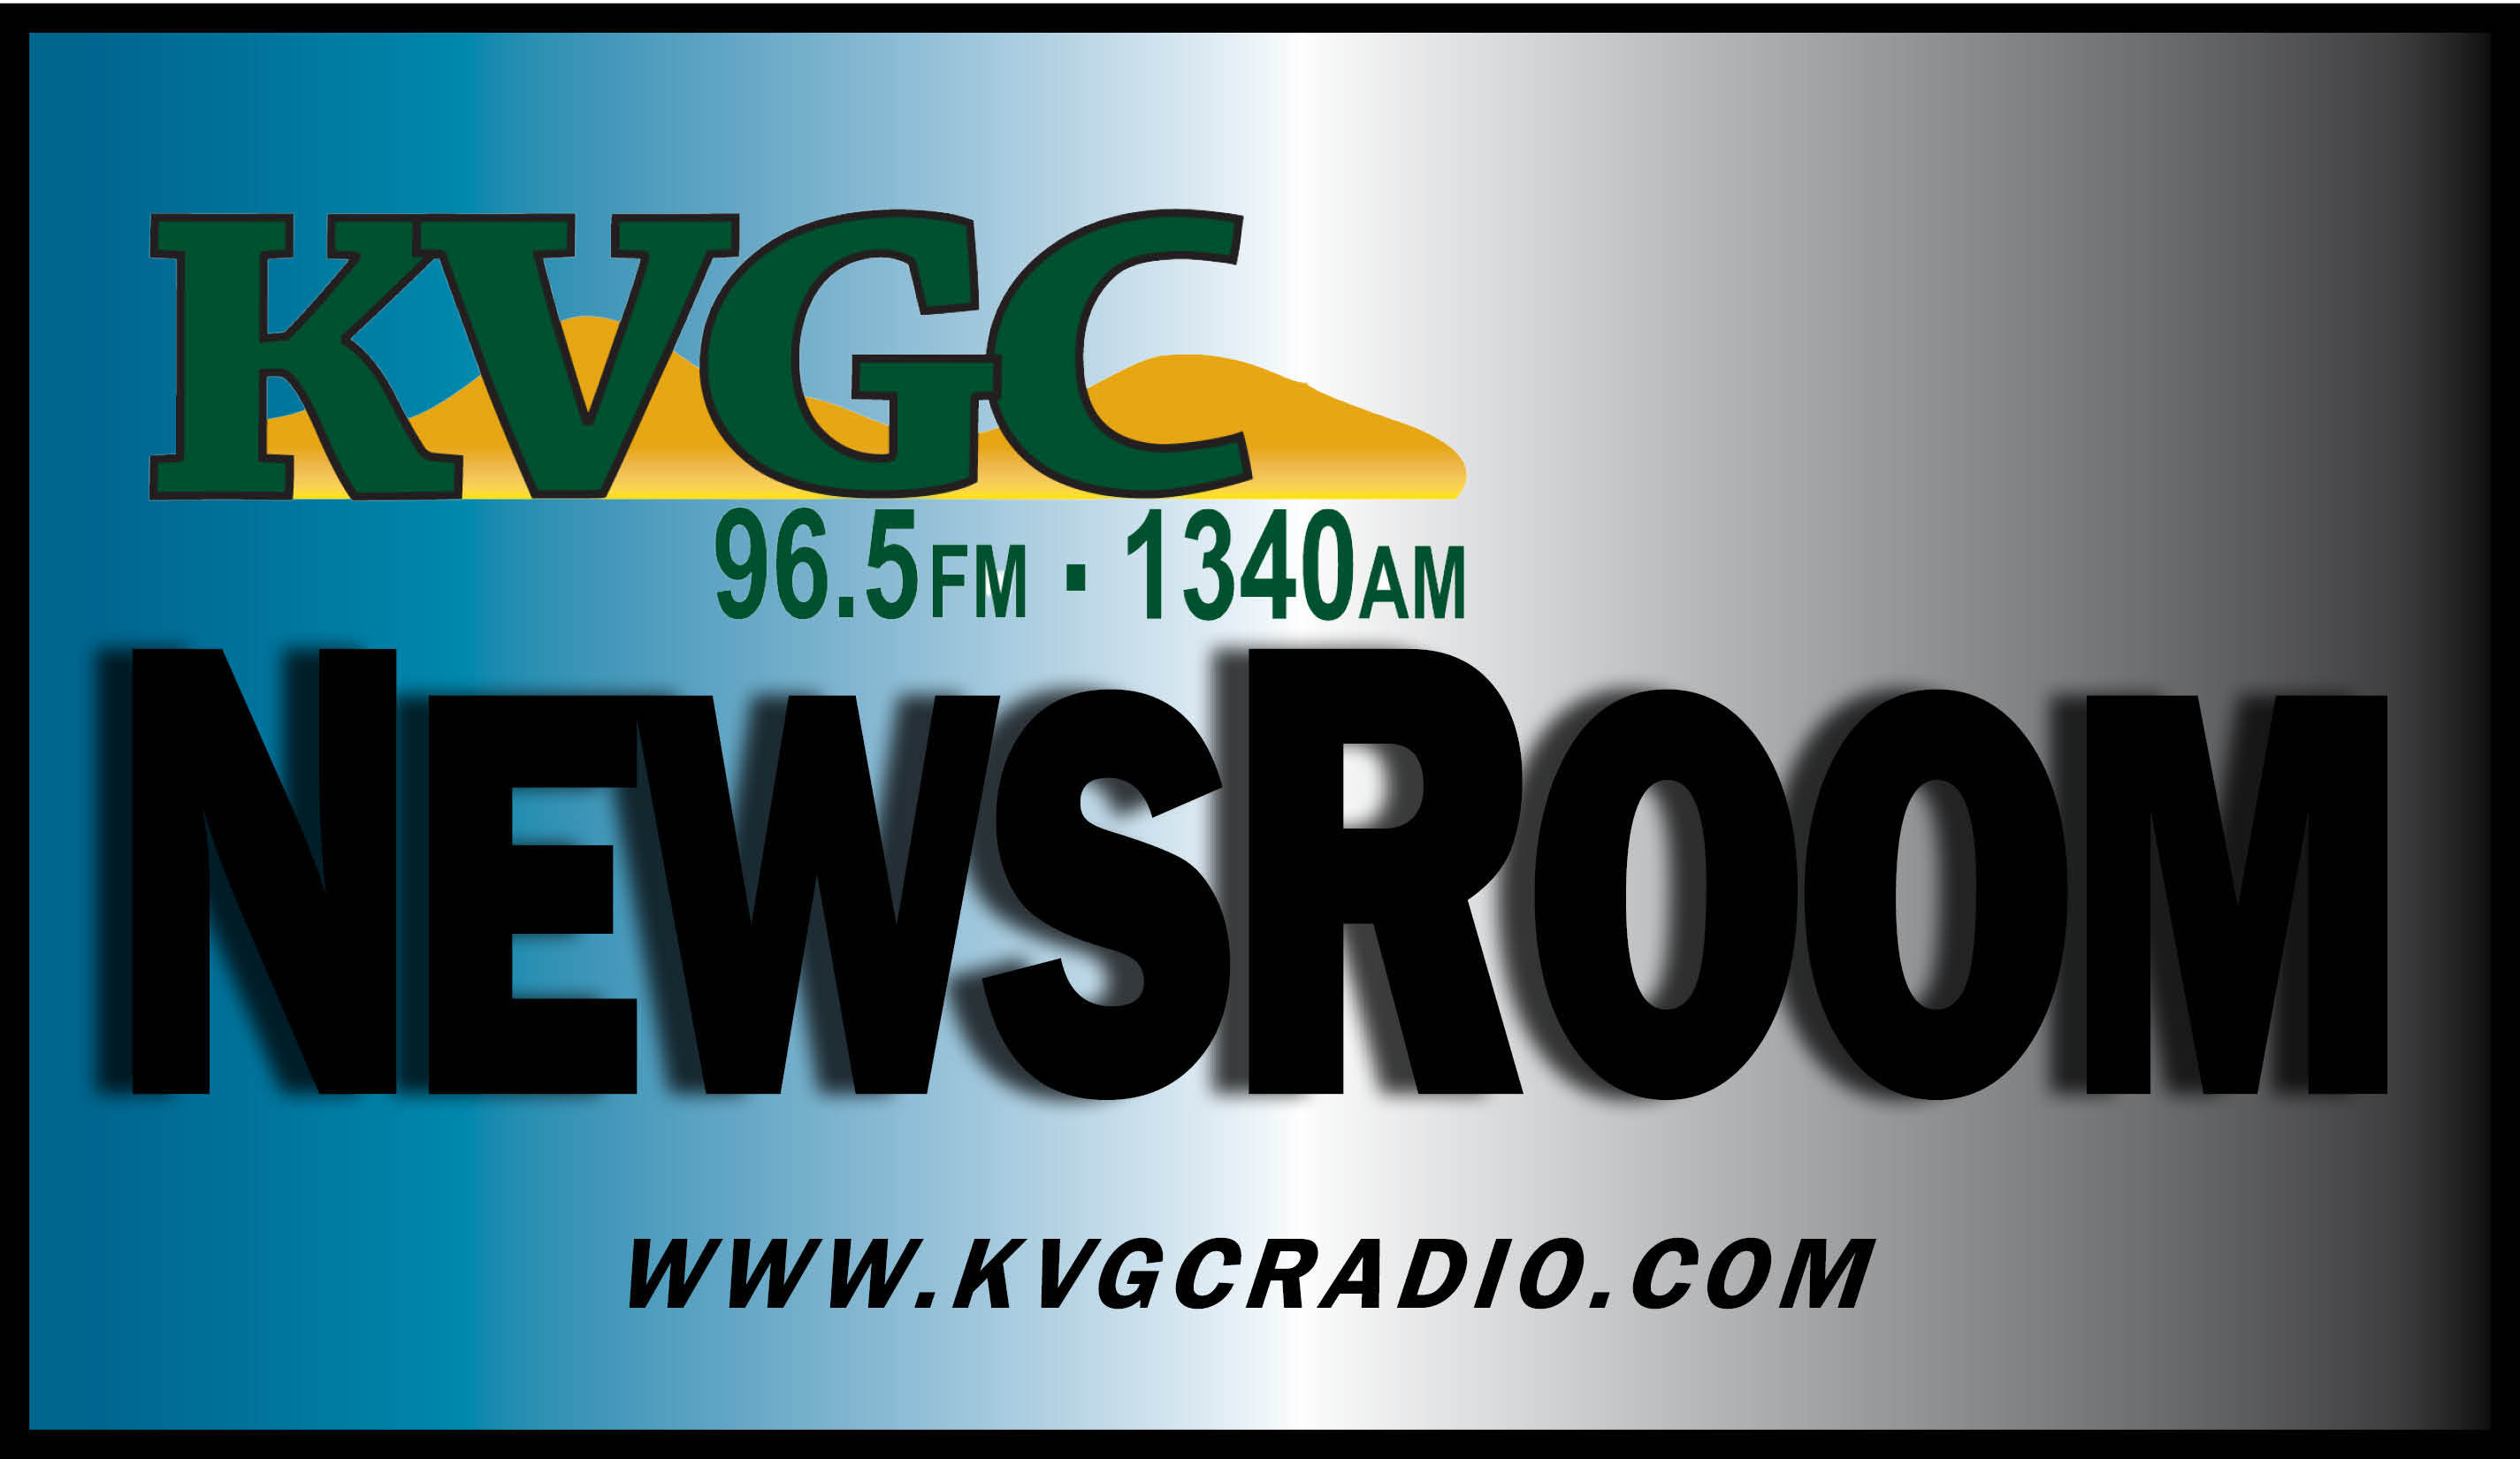 KVGC Local News